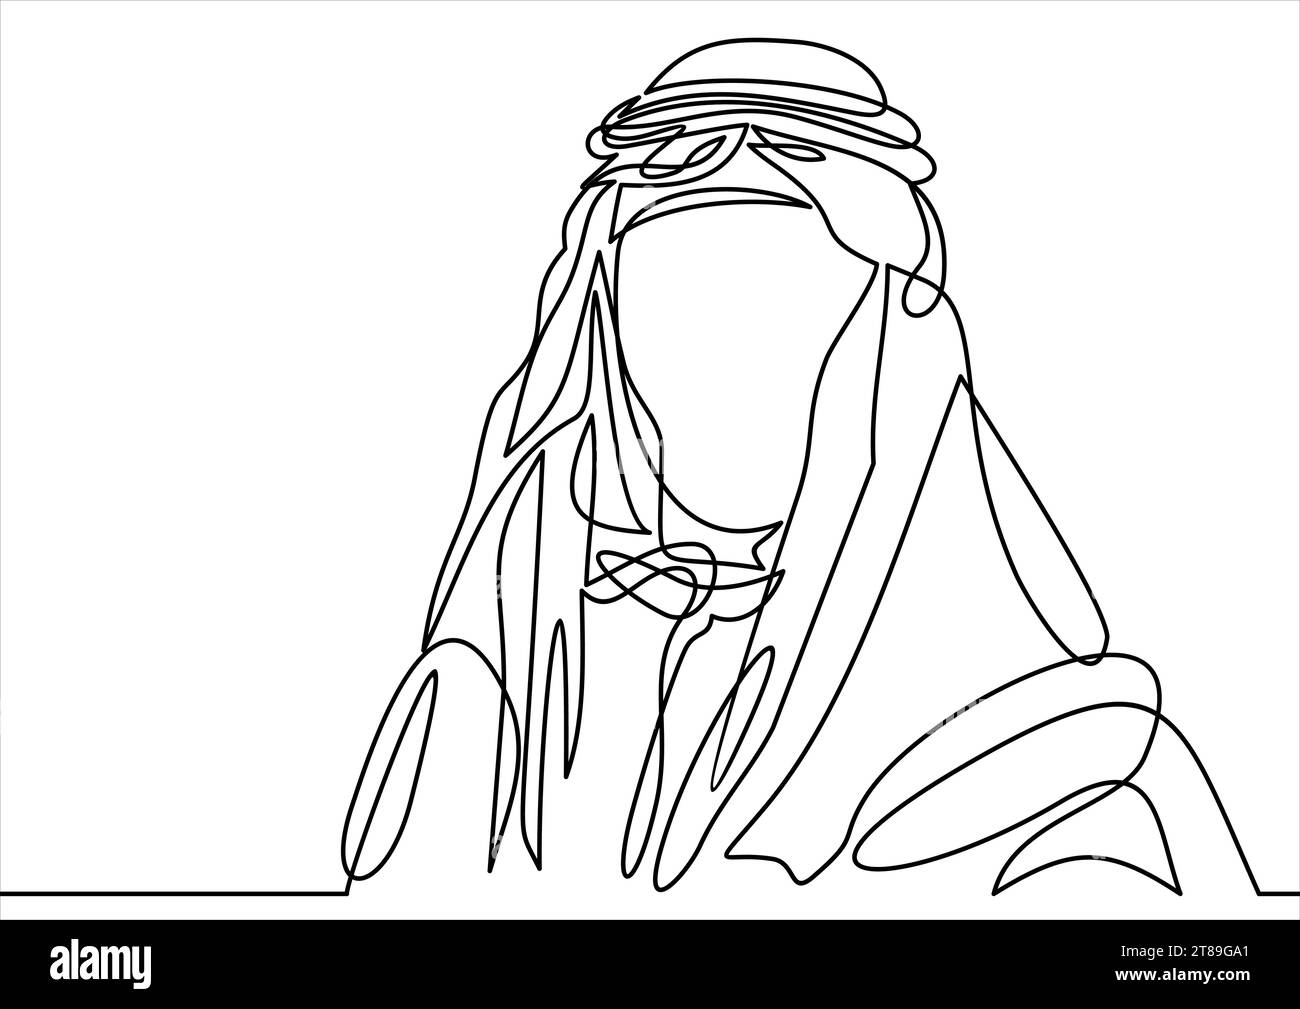 homme arabe du moyen-orient debout en keffiyeh - dessin à une seule ligne Illustration de Vecteur